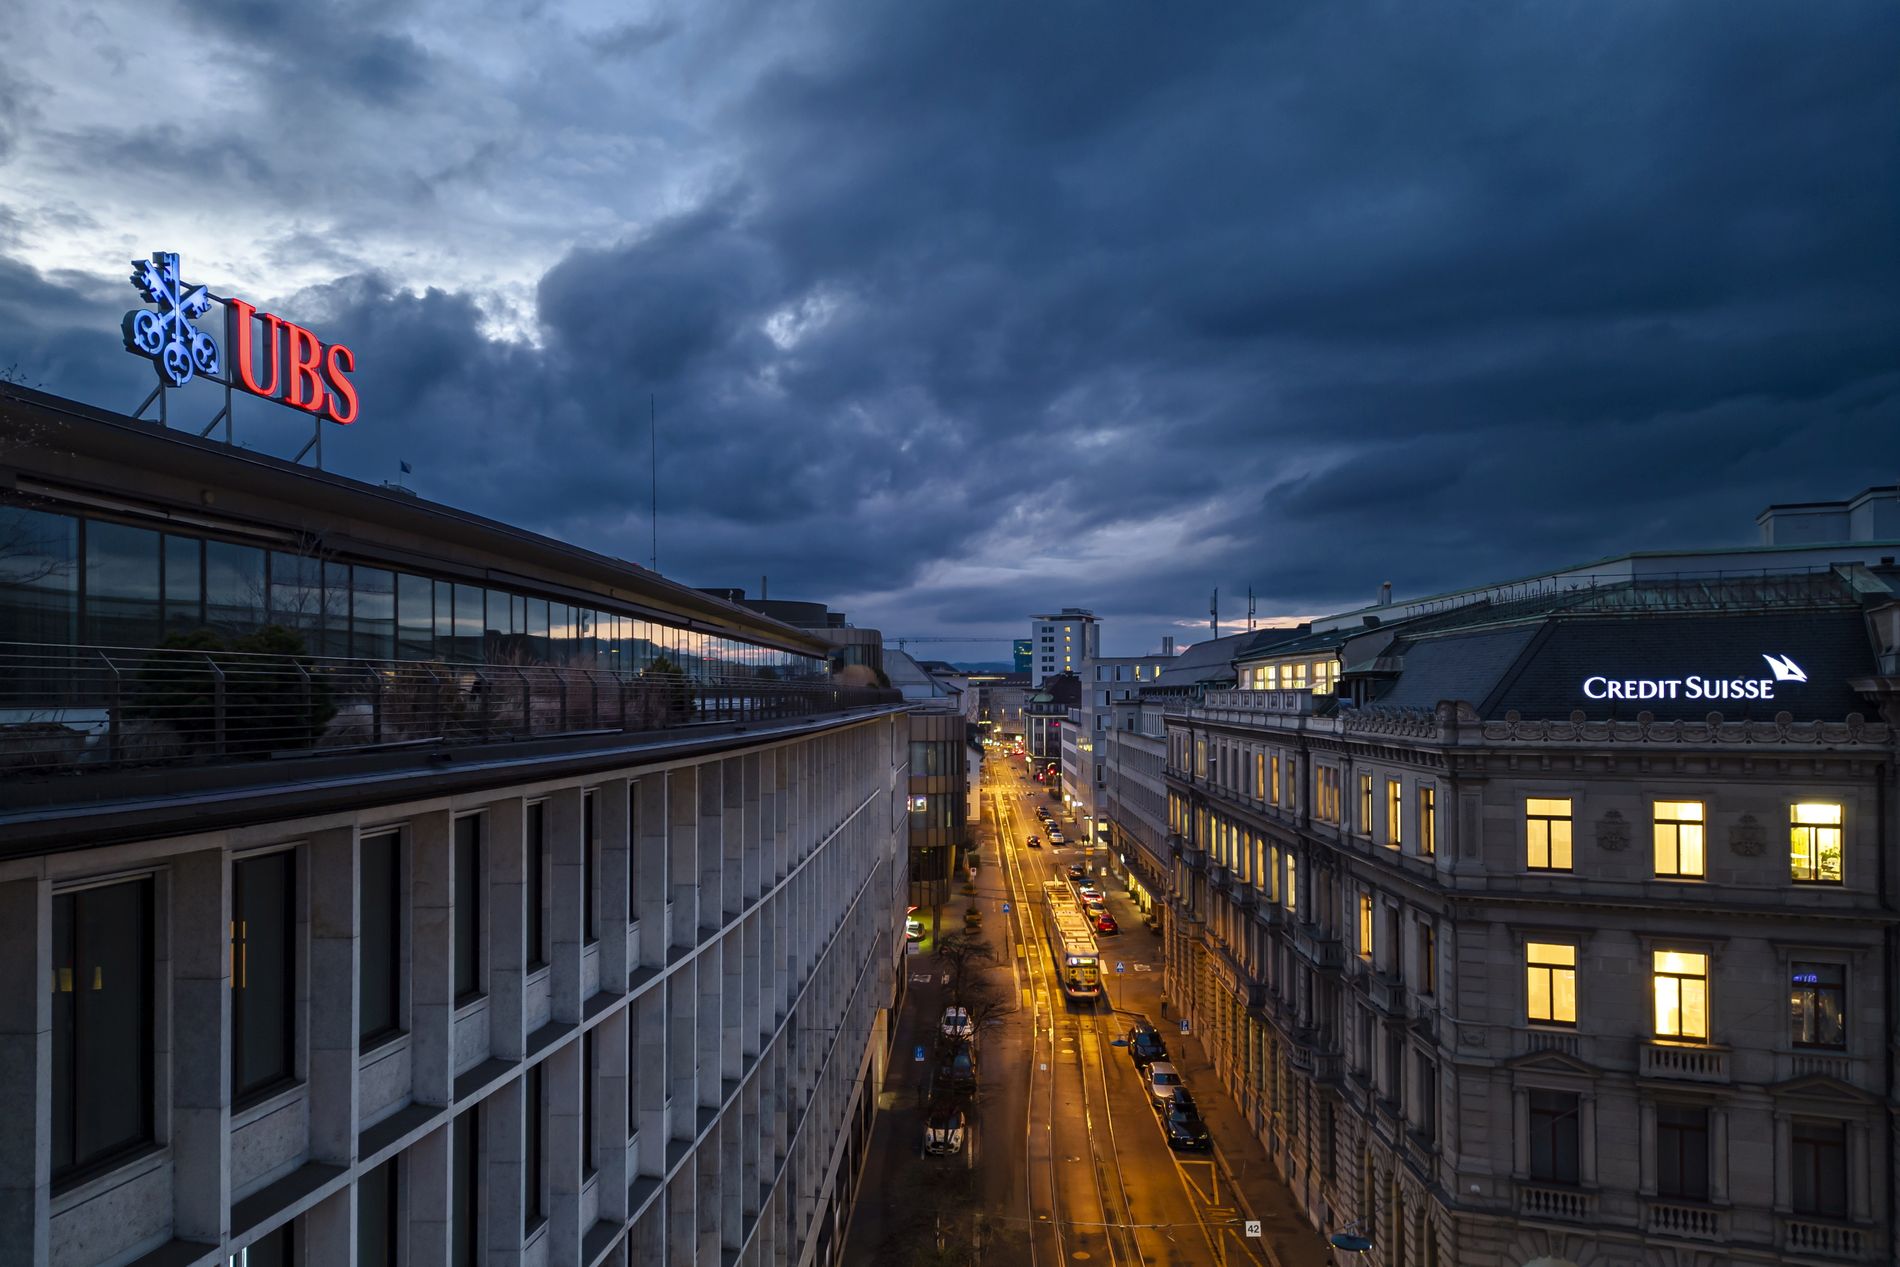 Τα κεντρικά γραφεία των ελβετικών τραπεζών Credit Suisse και UBS στην πλατεία Paradeplatz στη Ζυρίχη, Ελβετία© EPA/MICHAEL BUHOLZER